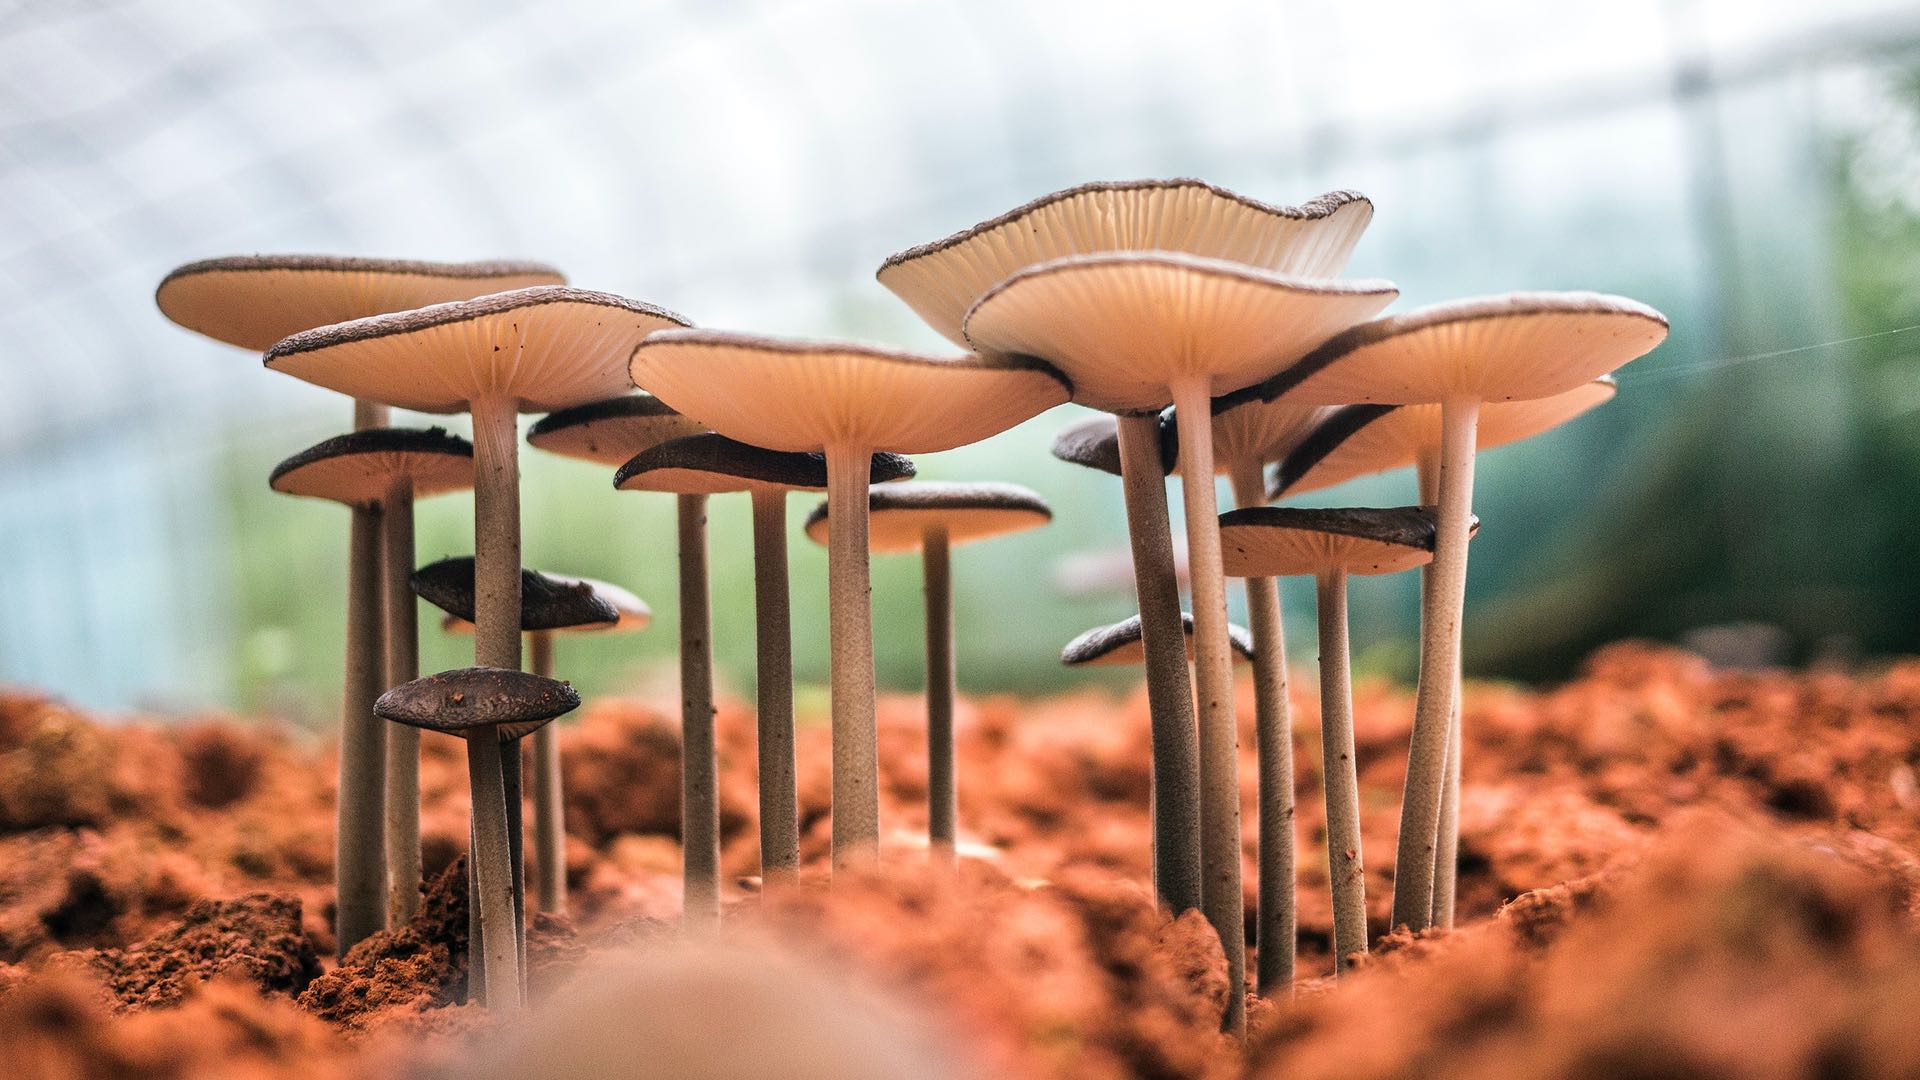 Les champignons sont les nouveaux chouchous de l’industrie cosmétique, et c’est une bonne nouvelle